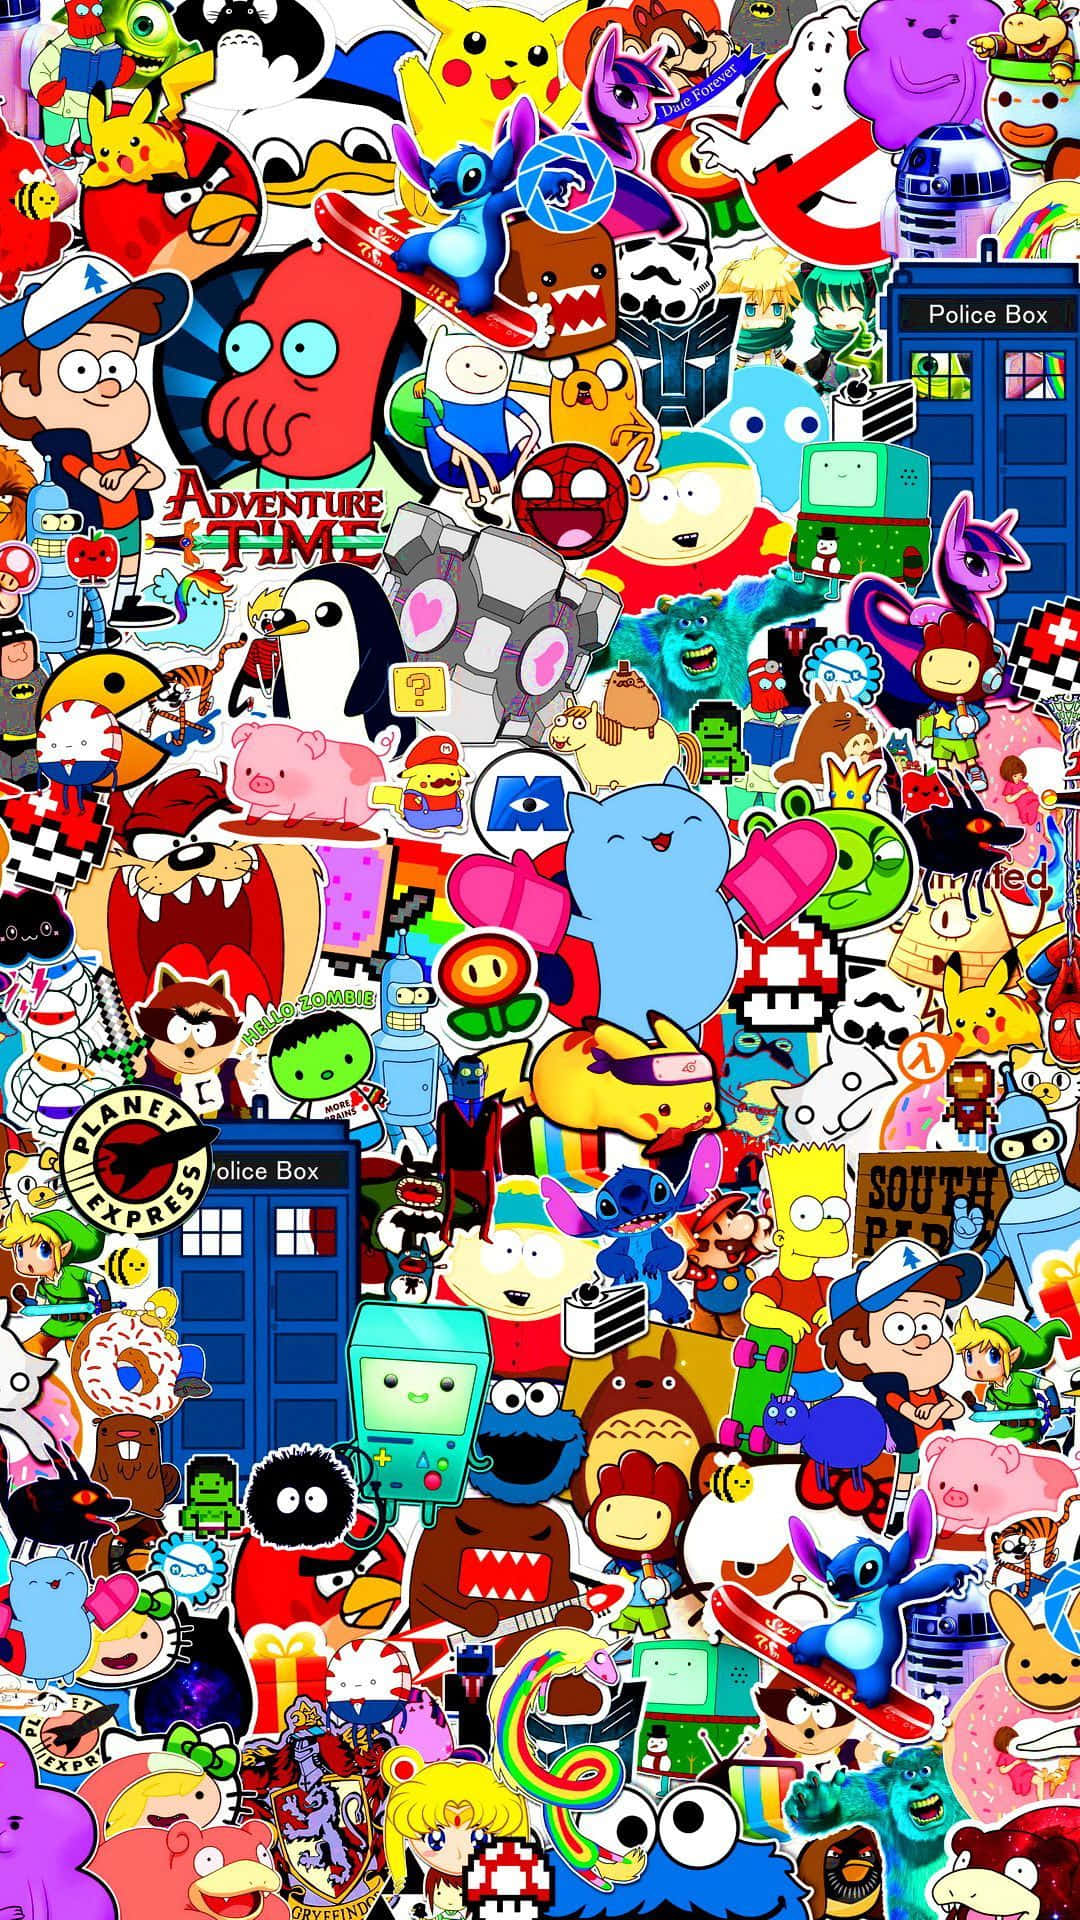 Einecollage Von Cartoonfiguren In Verschiedenen Farben Wallpaper